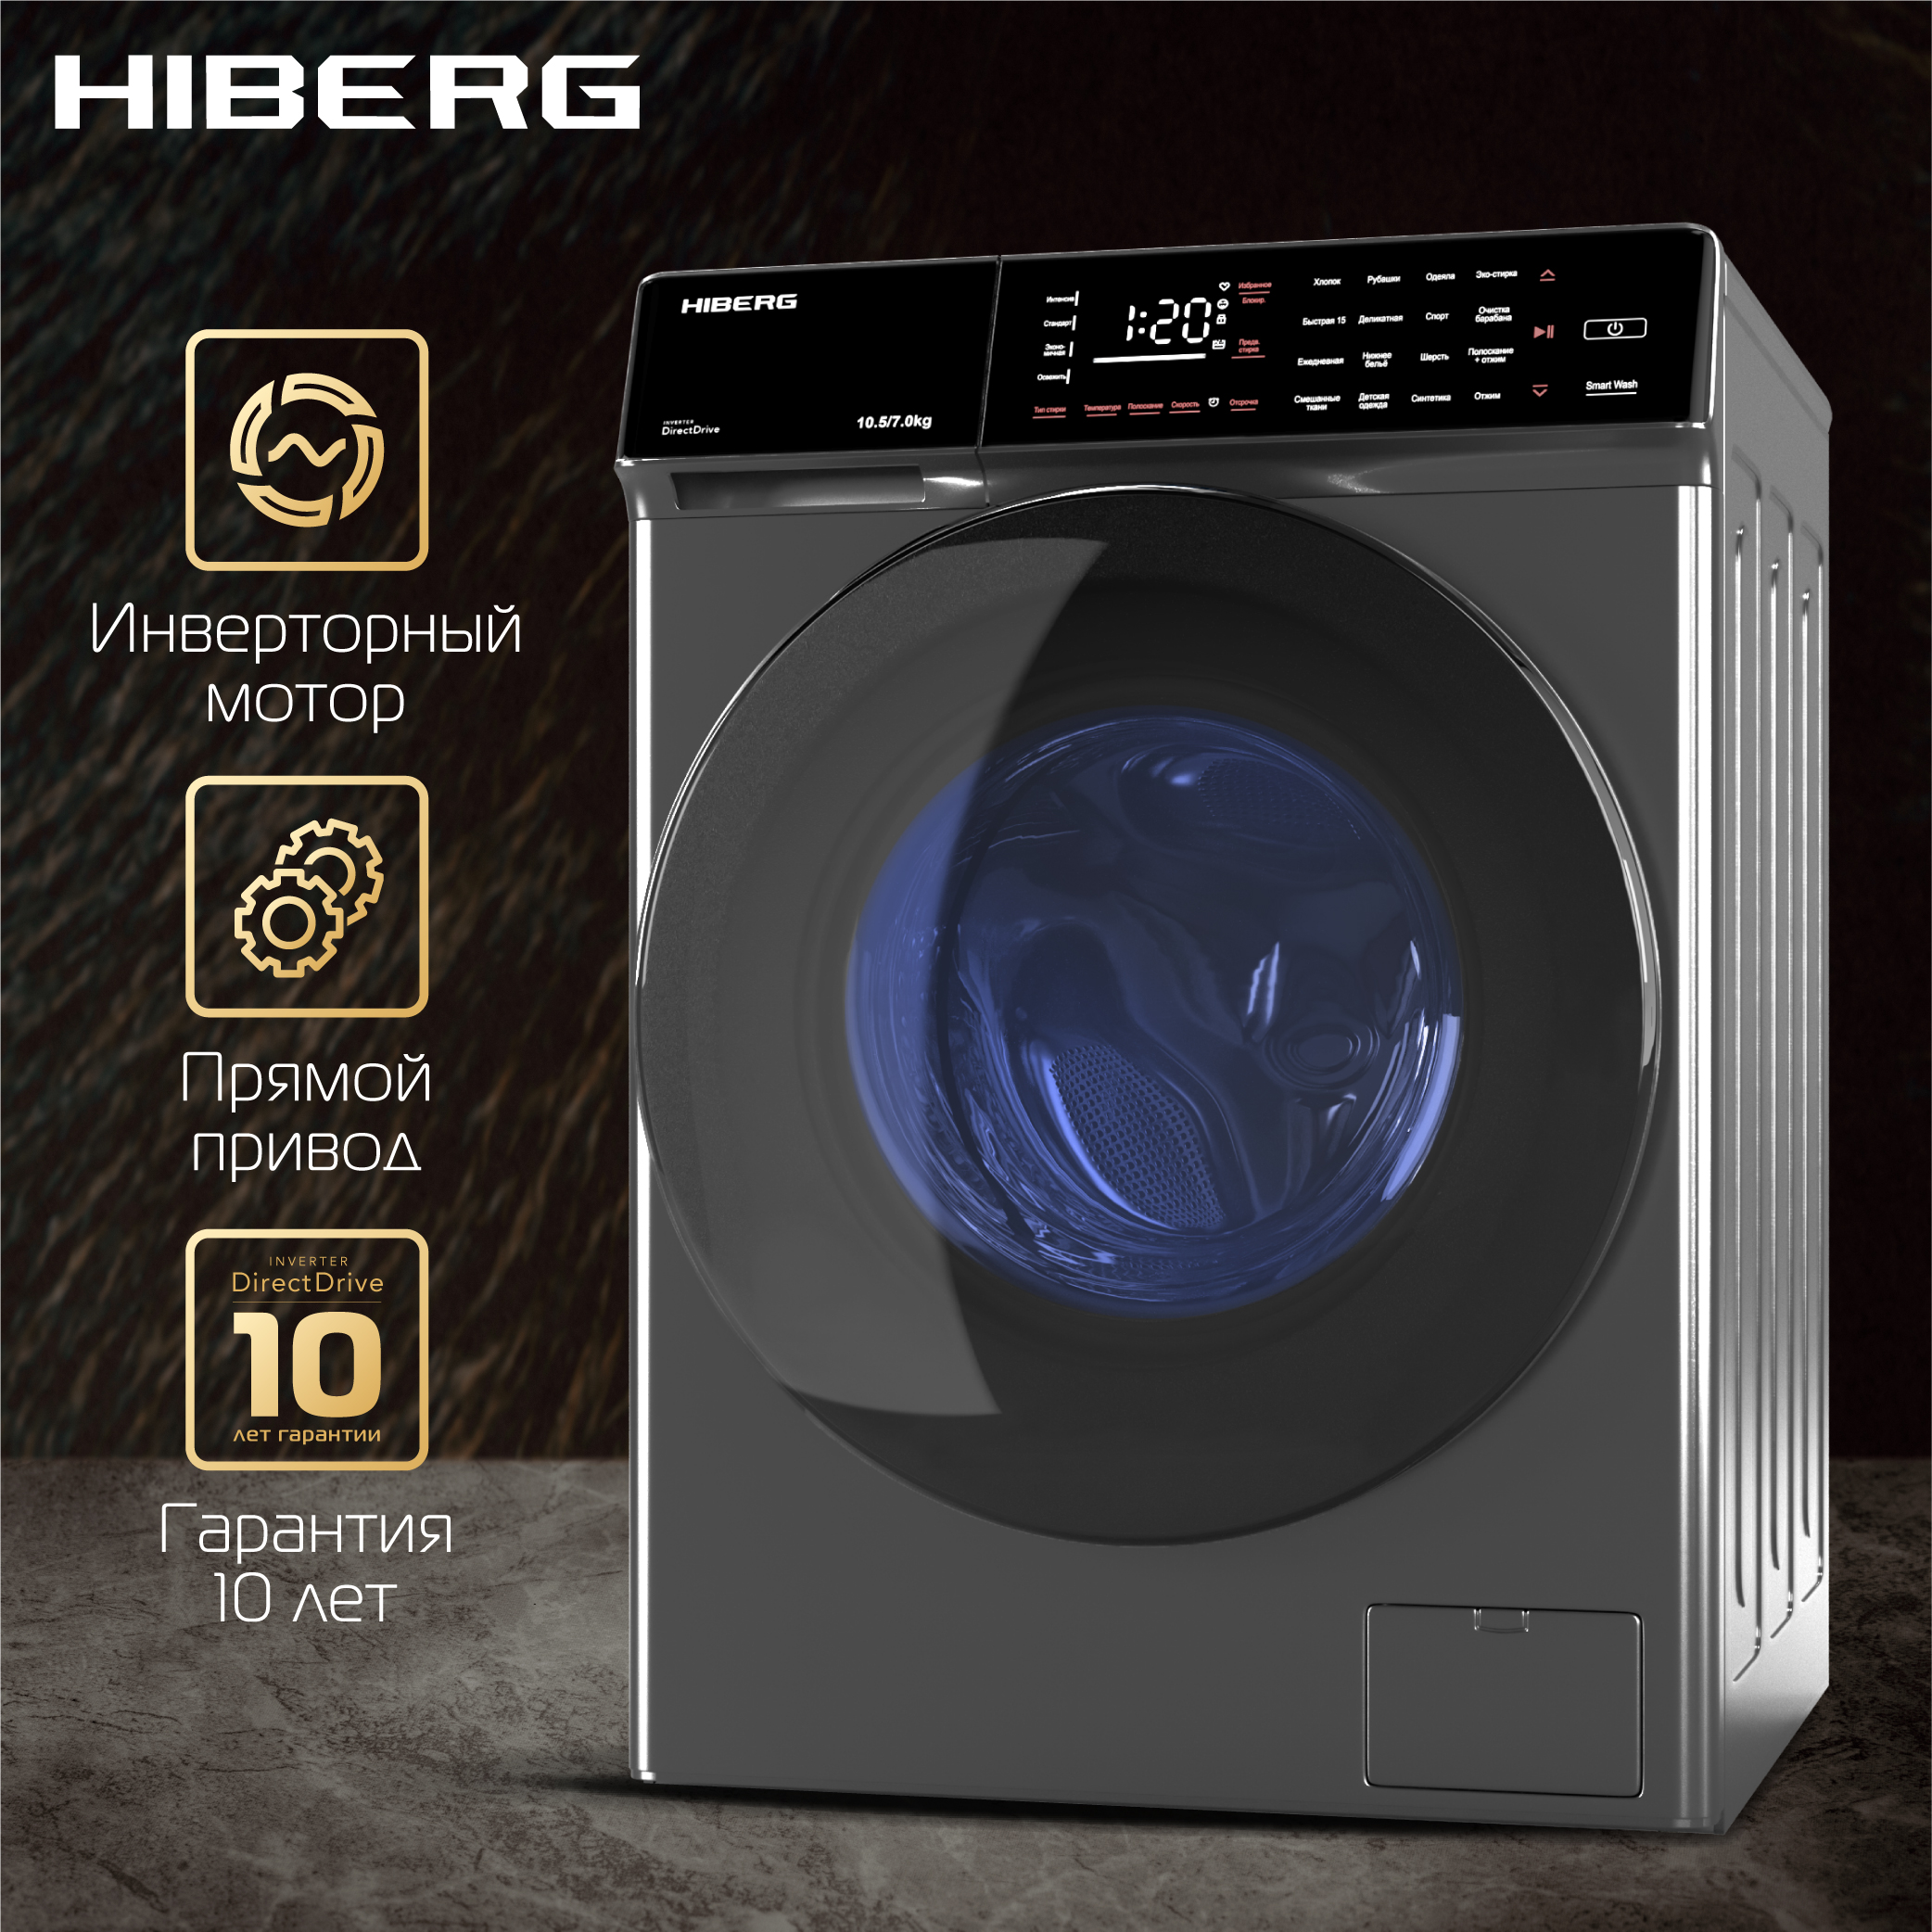 Стиральная машина Hiberg i-DDQ9 - 10714 Sd серебристый стиральная машина hiberg i ddq10 10714 b